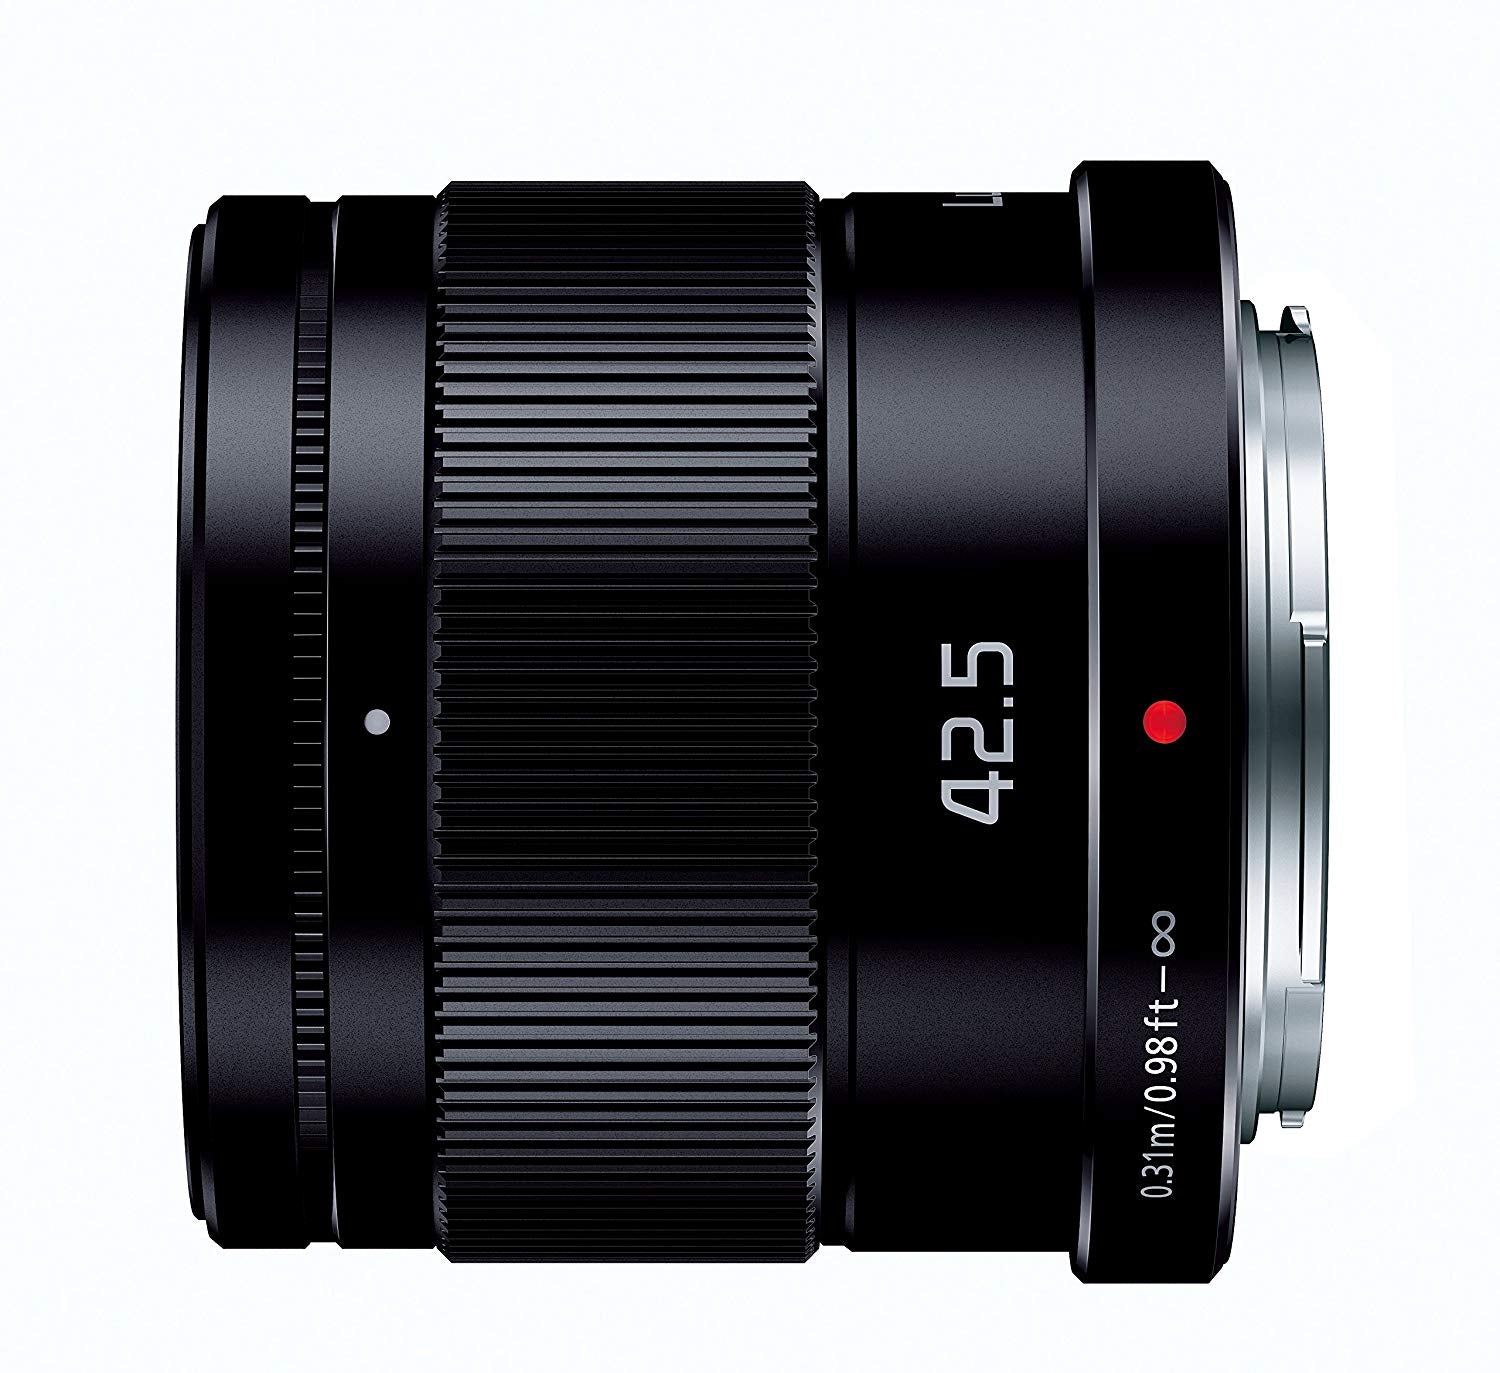 Panasonic Lumix H-HS043K LUMIX G 42.5mm f/1.7 Asph. Power O.I.S. Lens for Micro Four Thirds Cameras